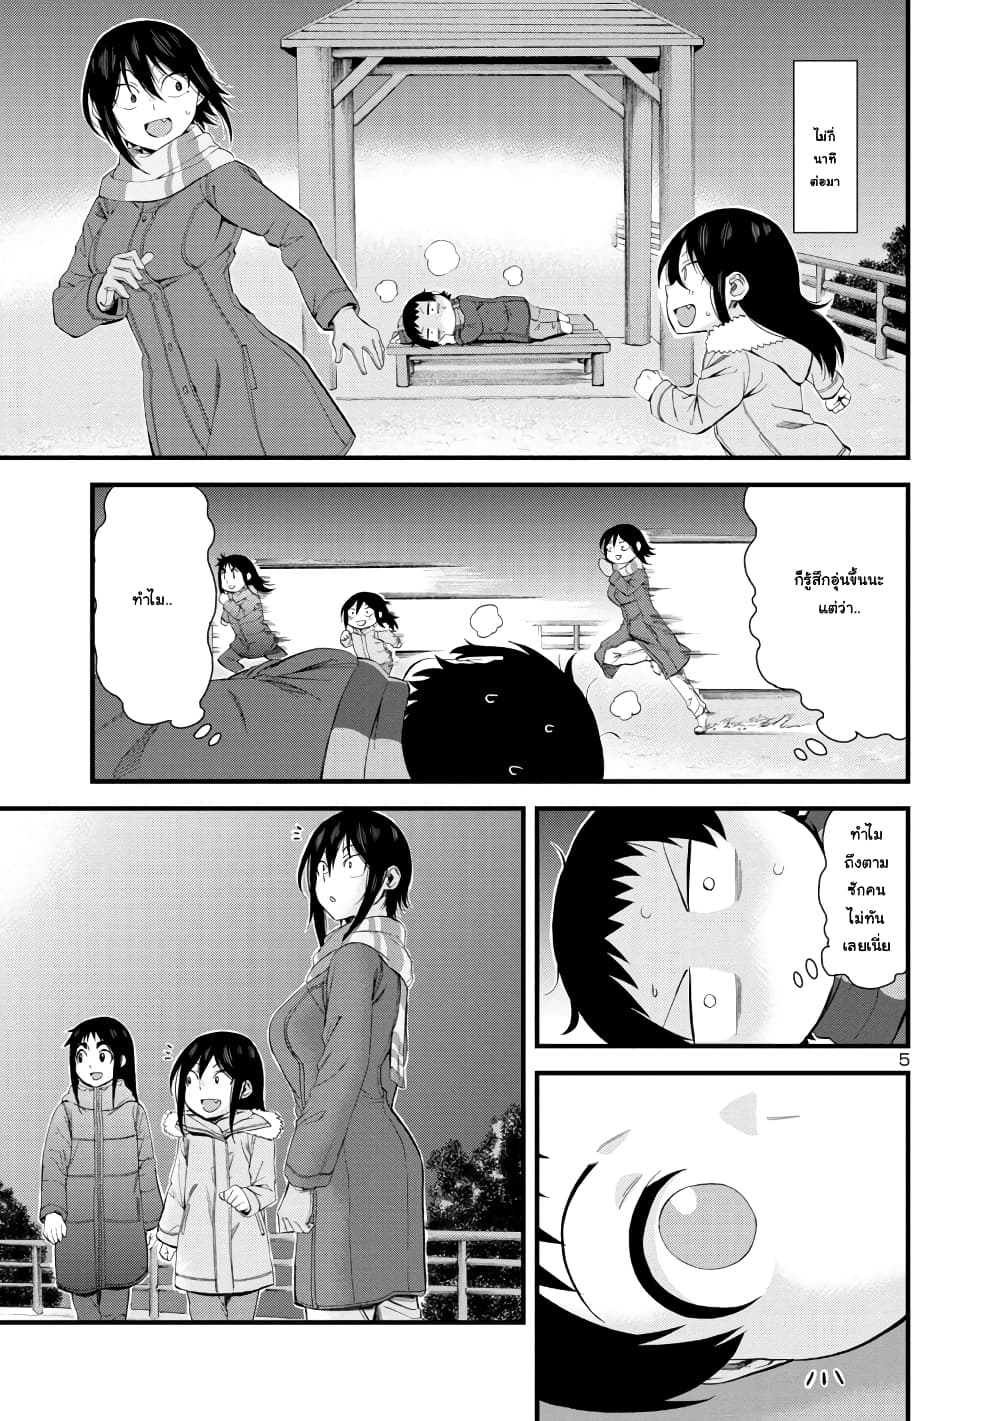 Hitomi-chan Is Shy With Strangers วันๆของน้องฮิโตมิก็เป็นแบบนี้แหล่ะ 52-52